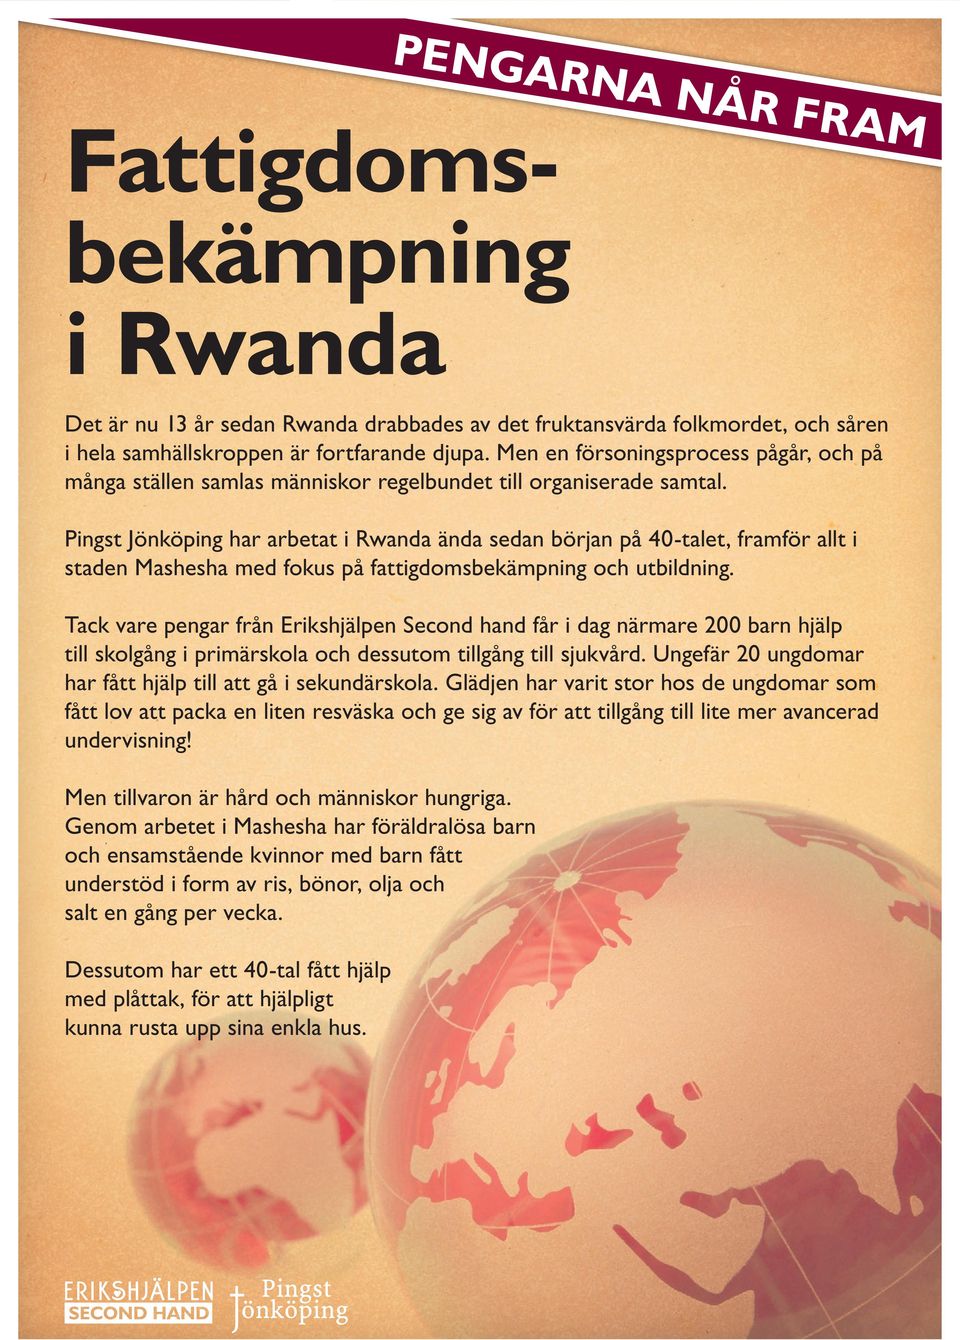 Pingst Jönköping har arbetat i Rwanda ända sedan början på 40-talet, framför allt i staden Mashesha med fokus på fattigdomsbekämpning och utbildning.